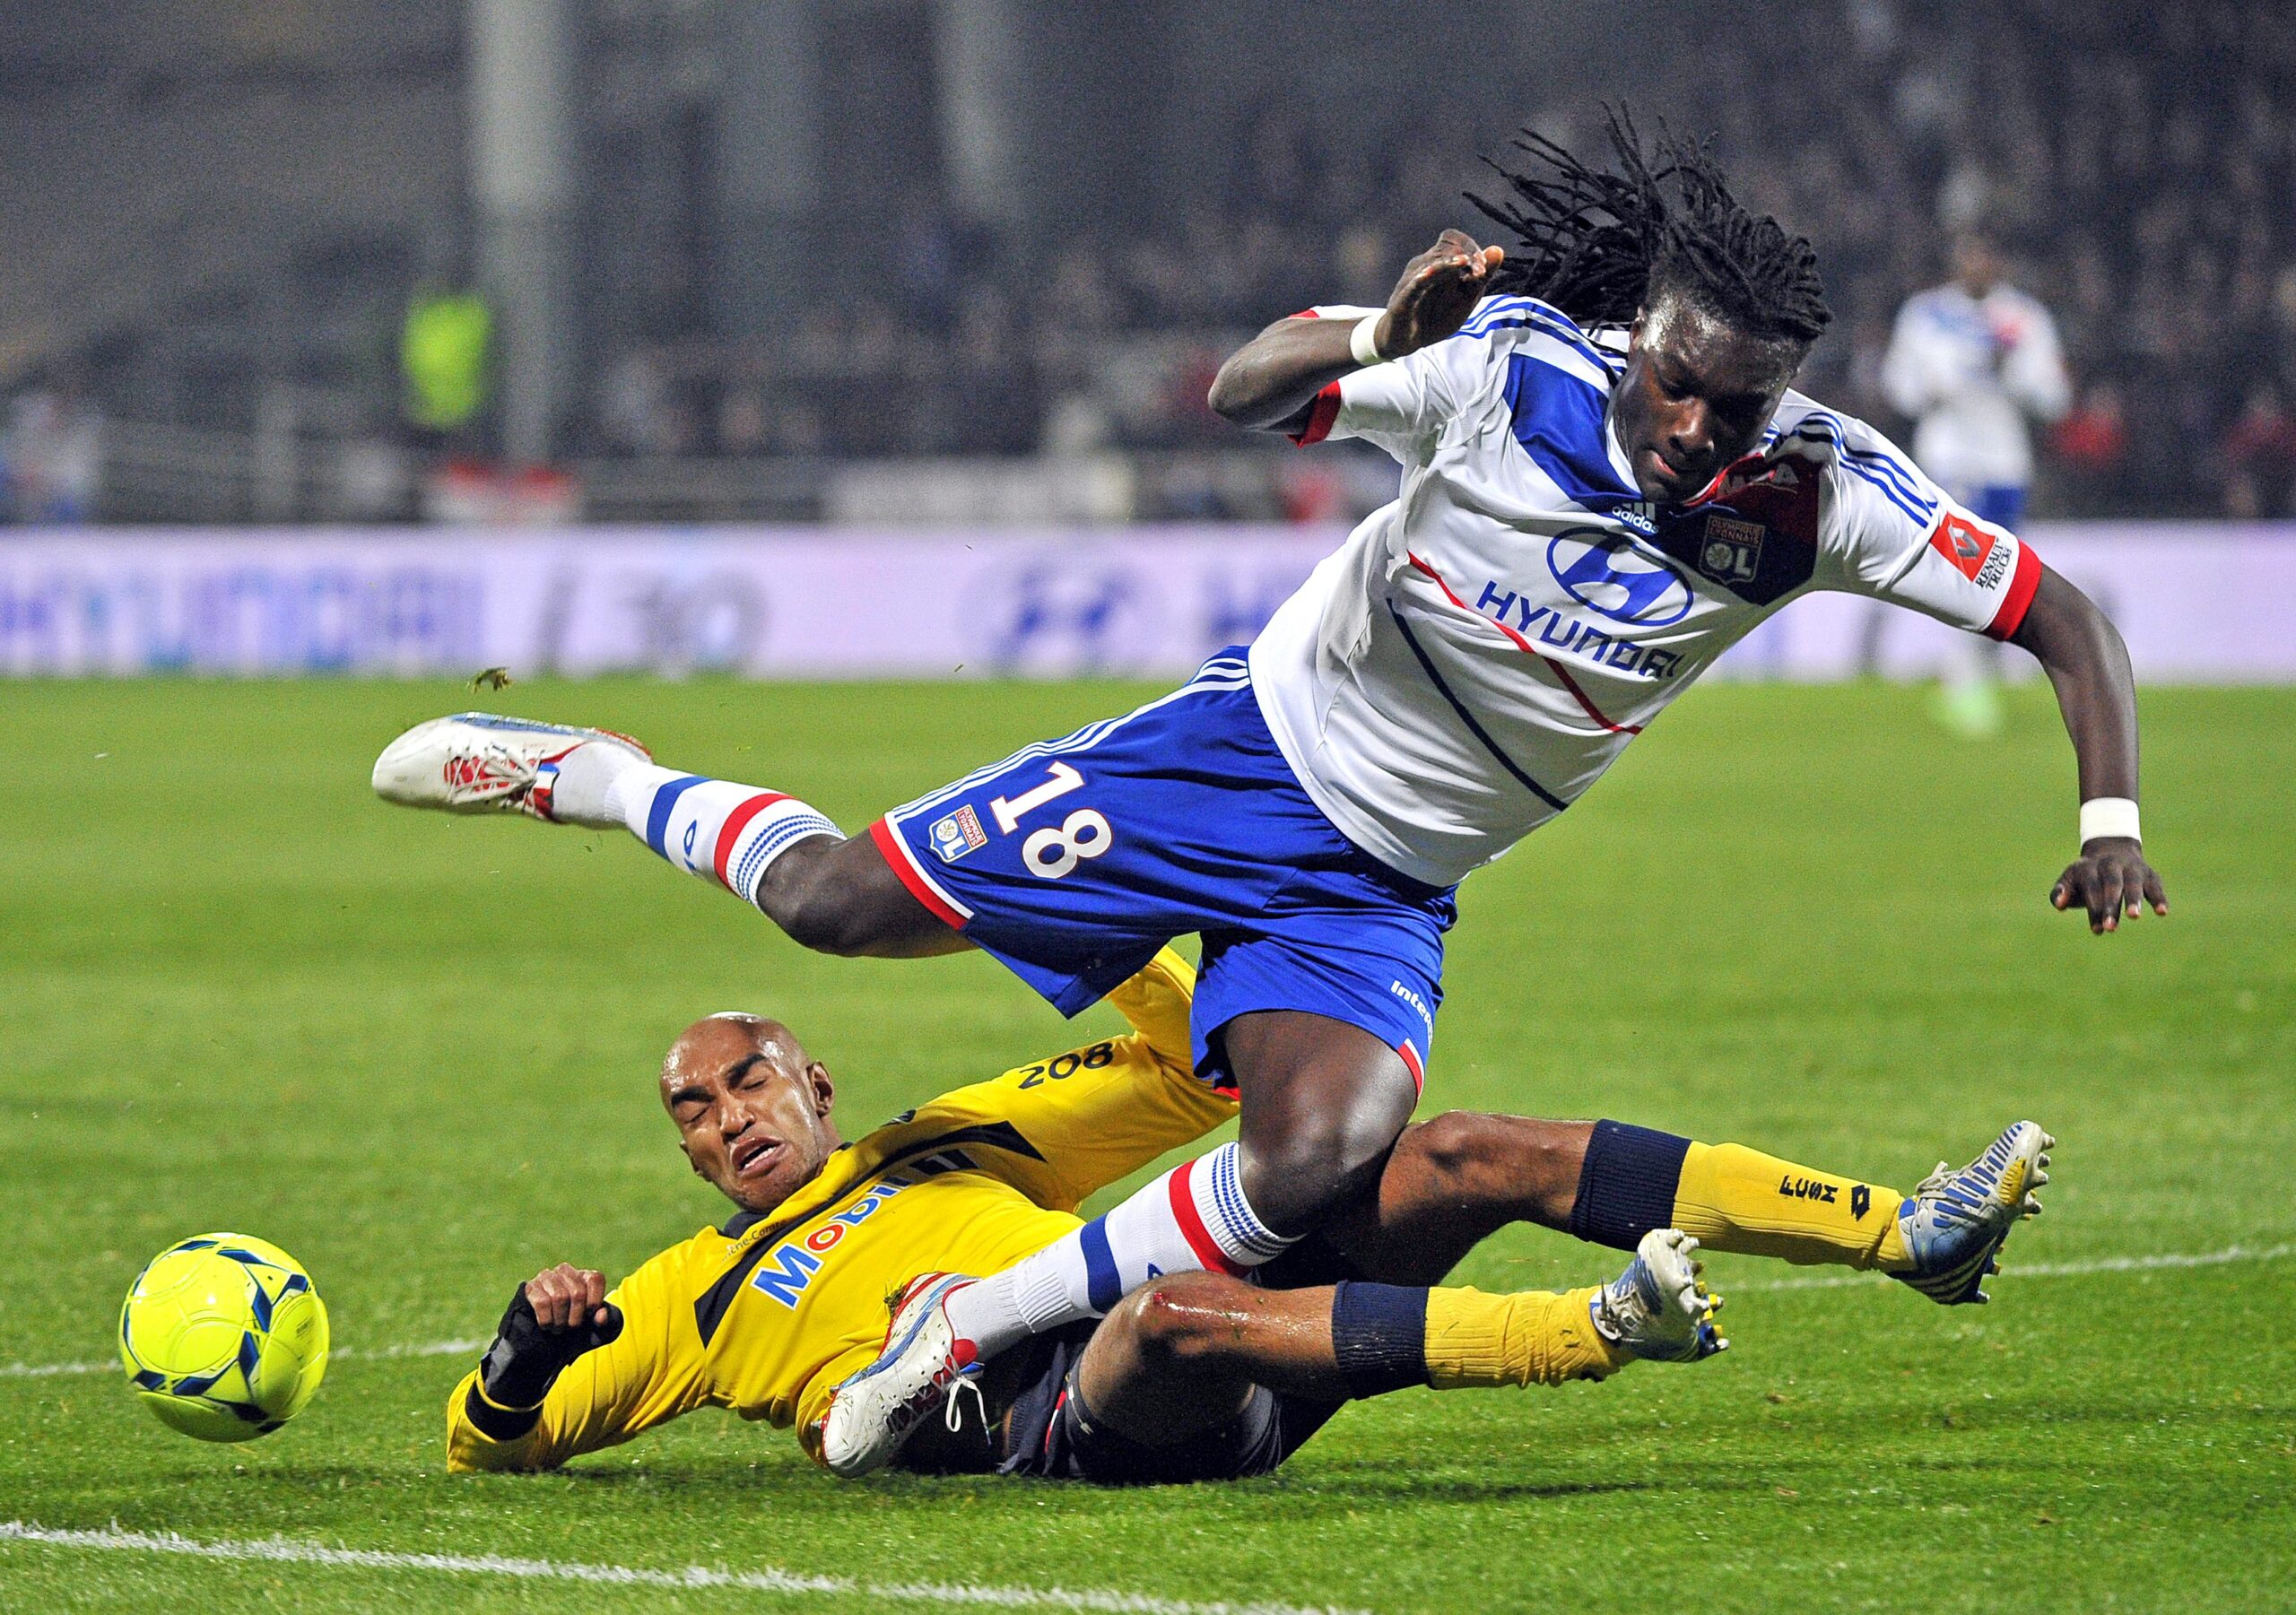 Ligue 1 : L'OL concède un triste match nul 0-0 à domicile face au Havre -  Eurosport